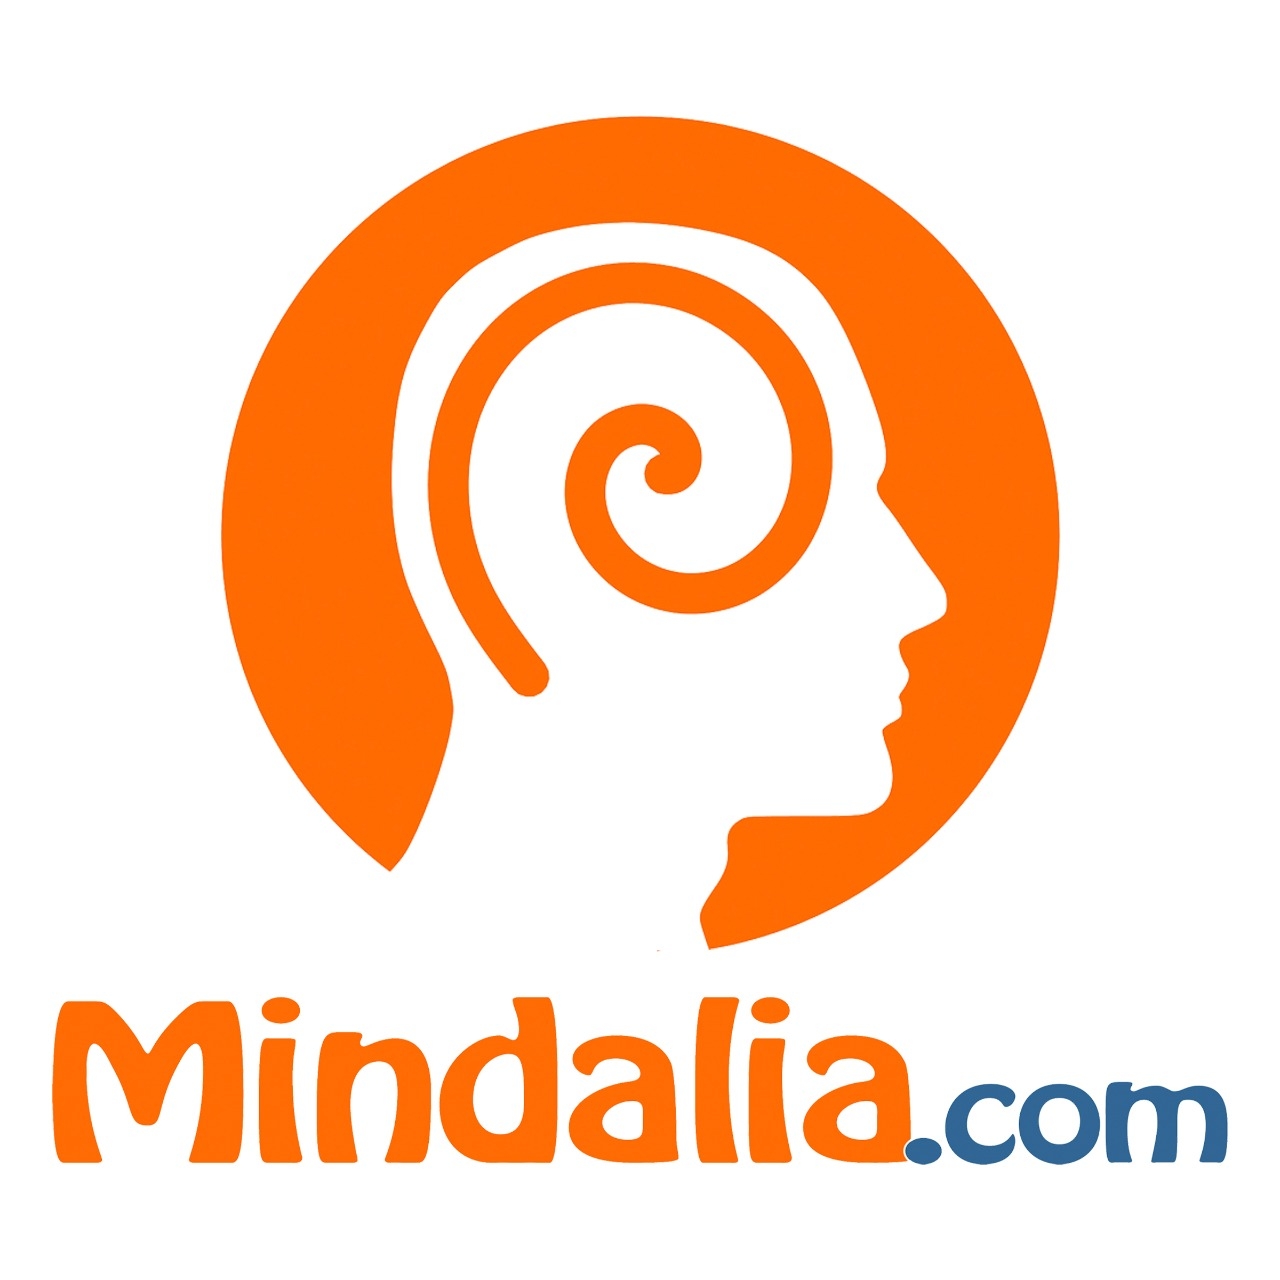 Mindalia.com